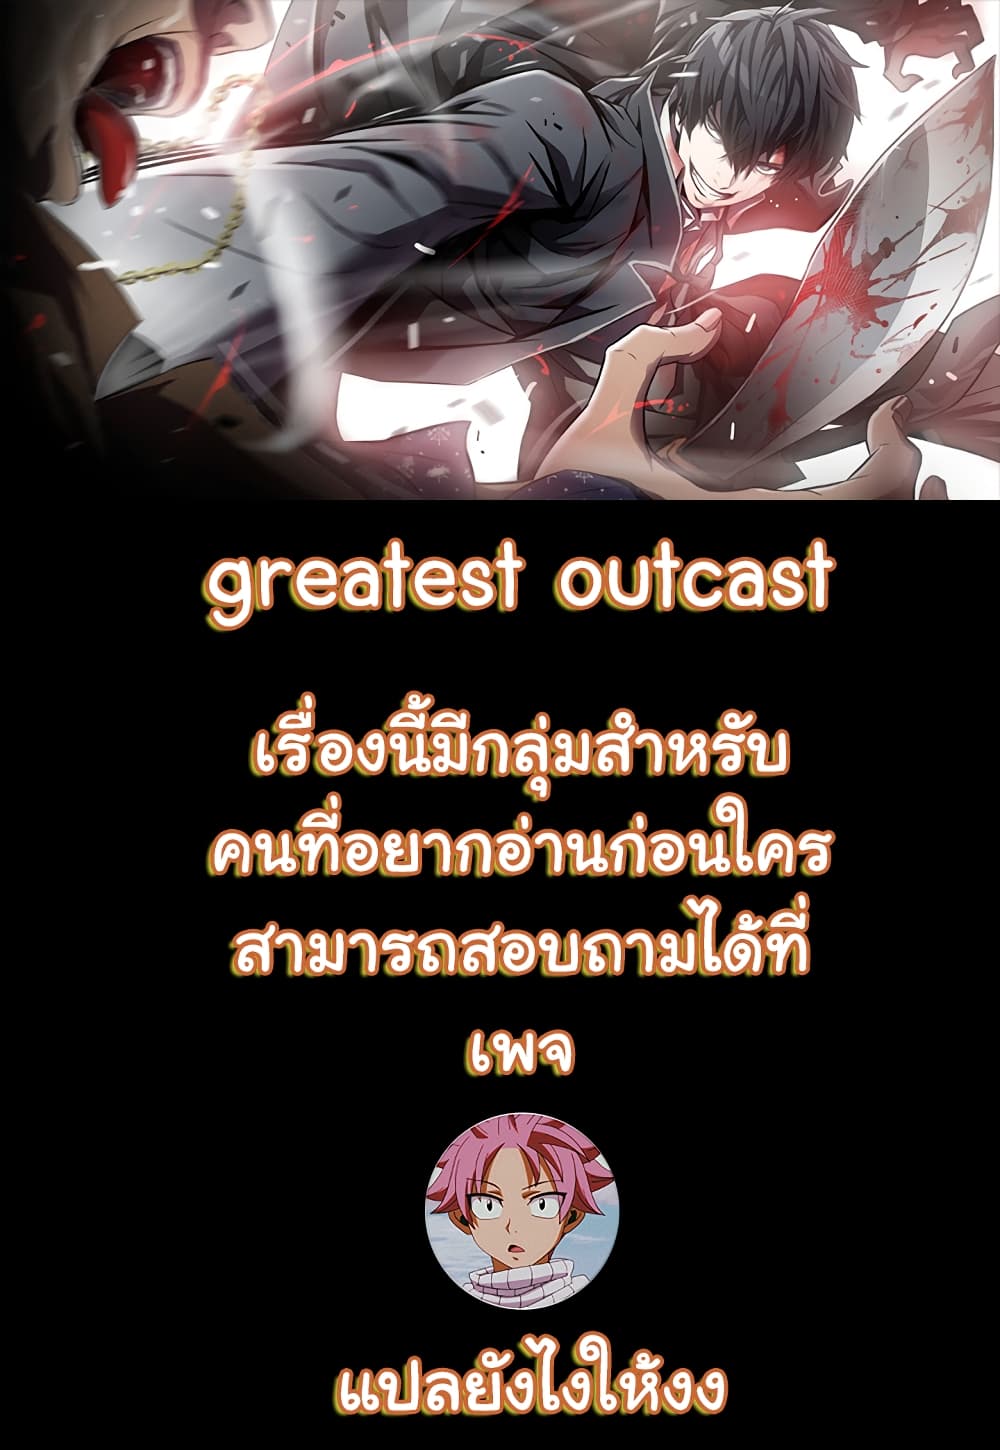 Greatest Outcast5 (1)